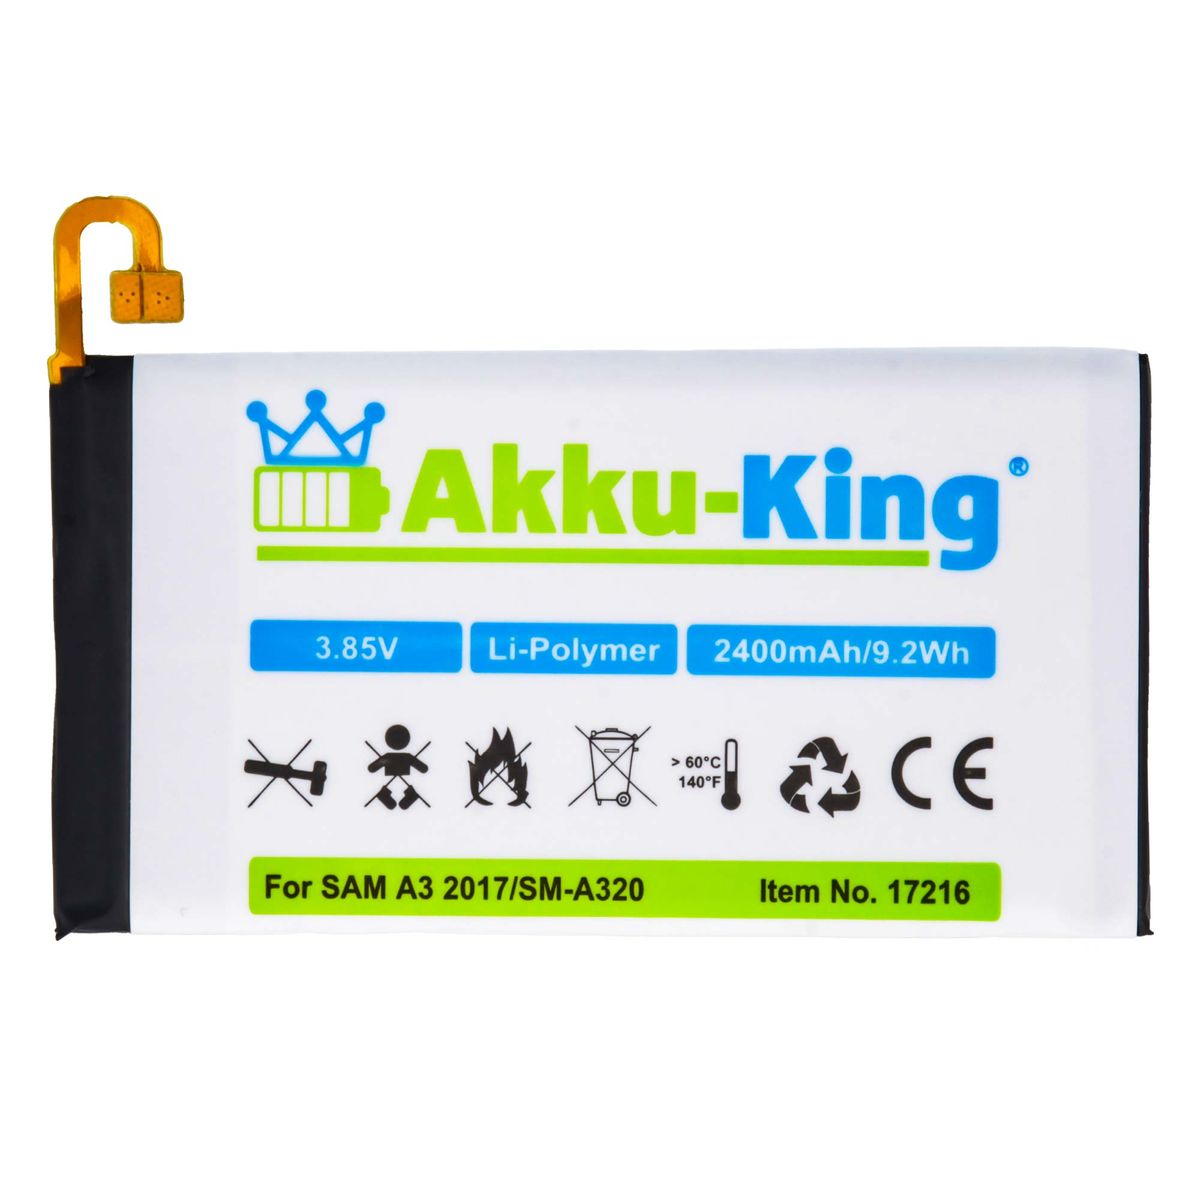 Samsung Li-Polymer kompatibel mit Akku Volt, AKKU-KING Handy-Akku, 3.85 2400mAh EB-BA320ABE